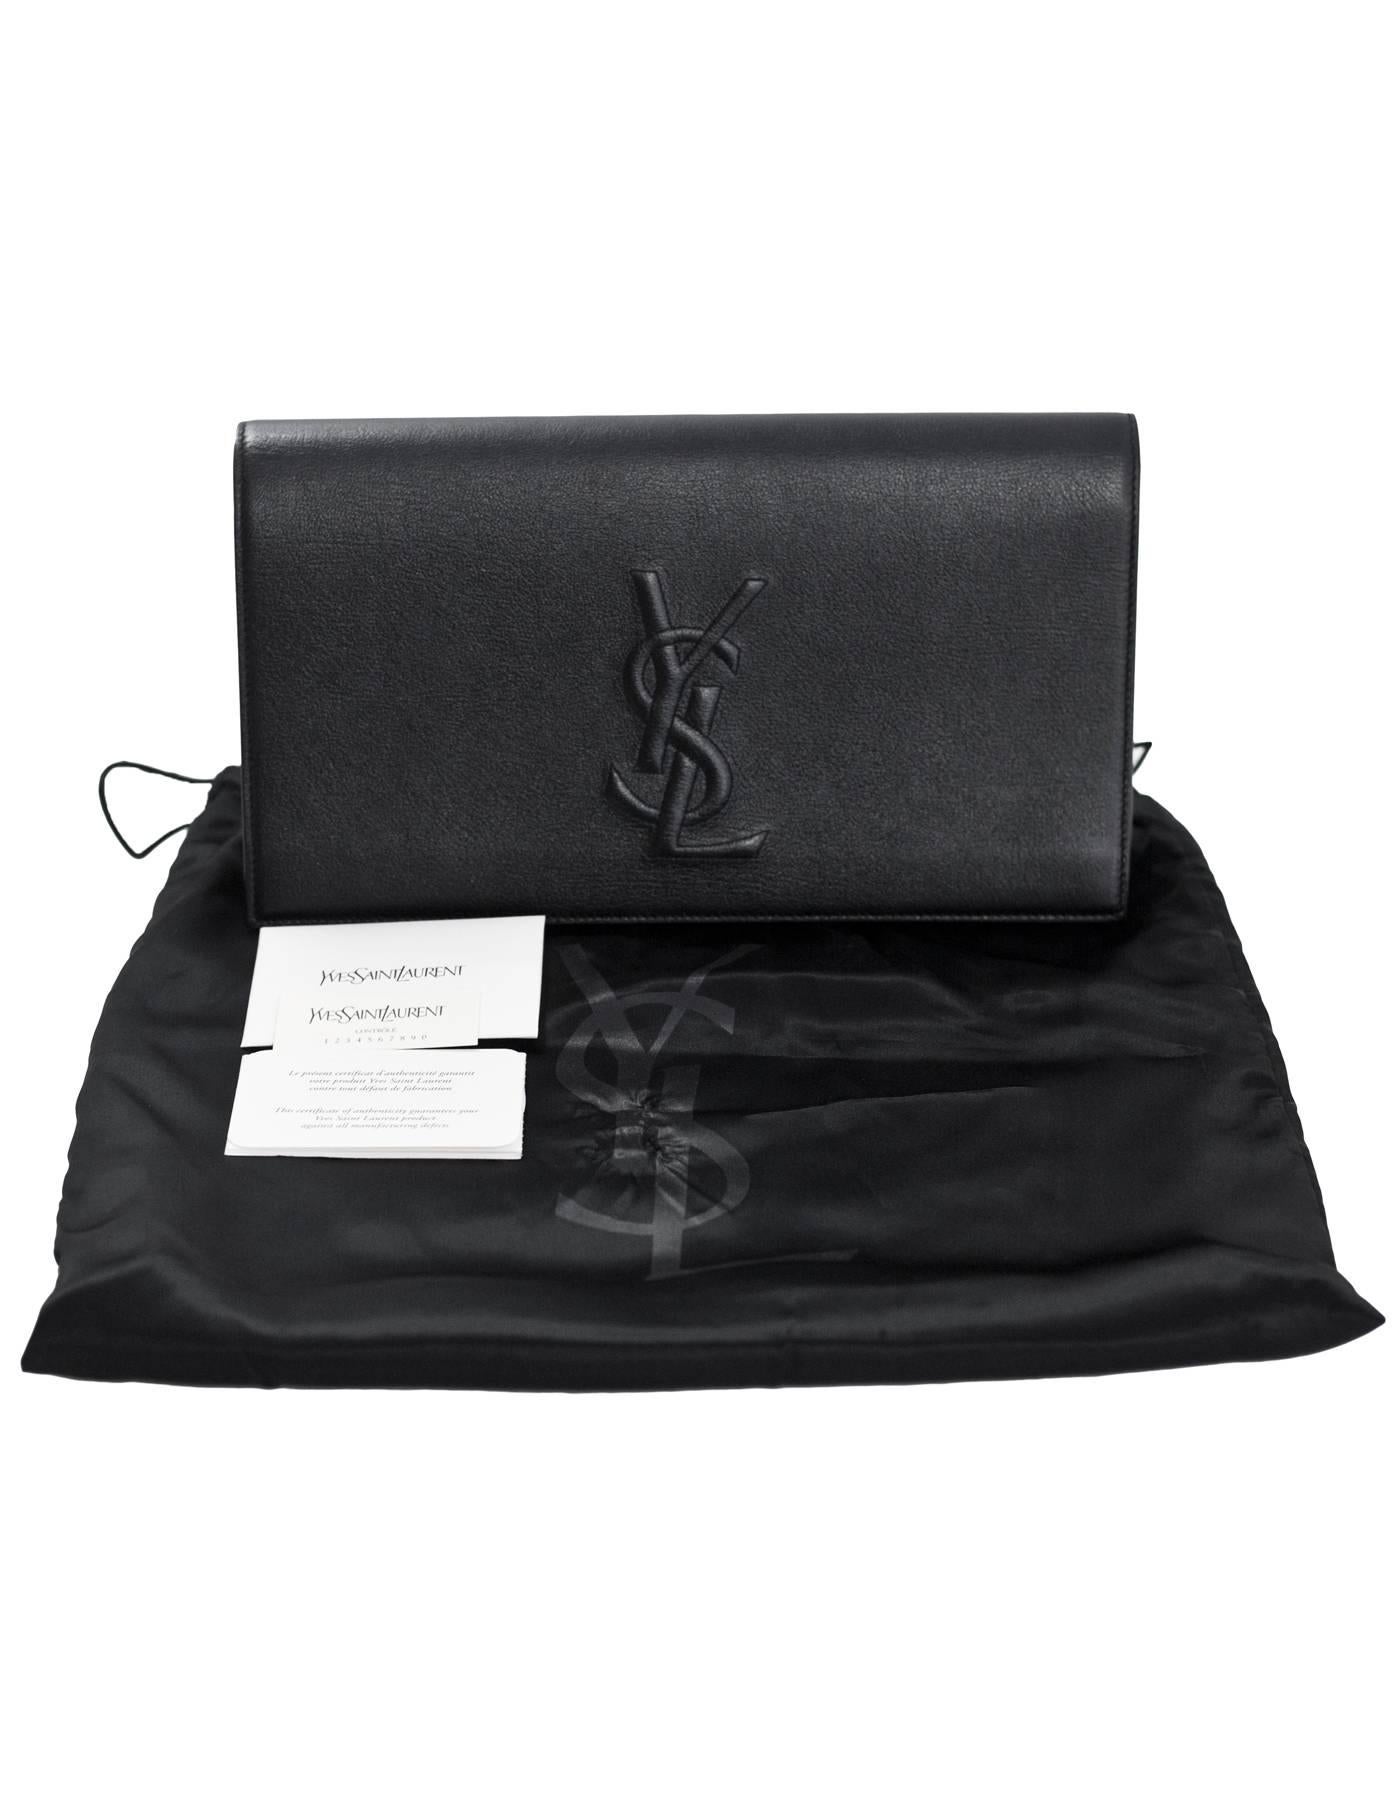 Yves Saint Laurent Black Leather Large Belle De Jour Clutch Bag with DB 2